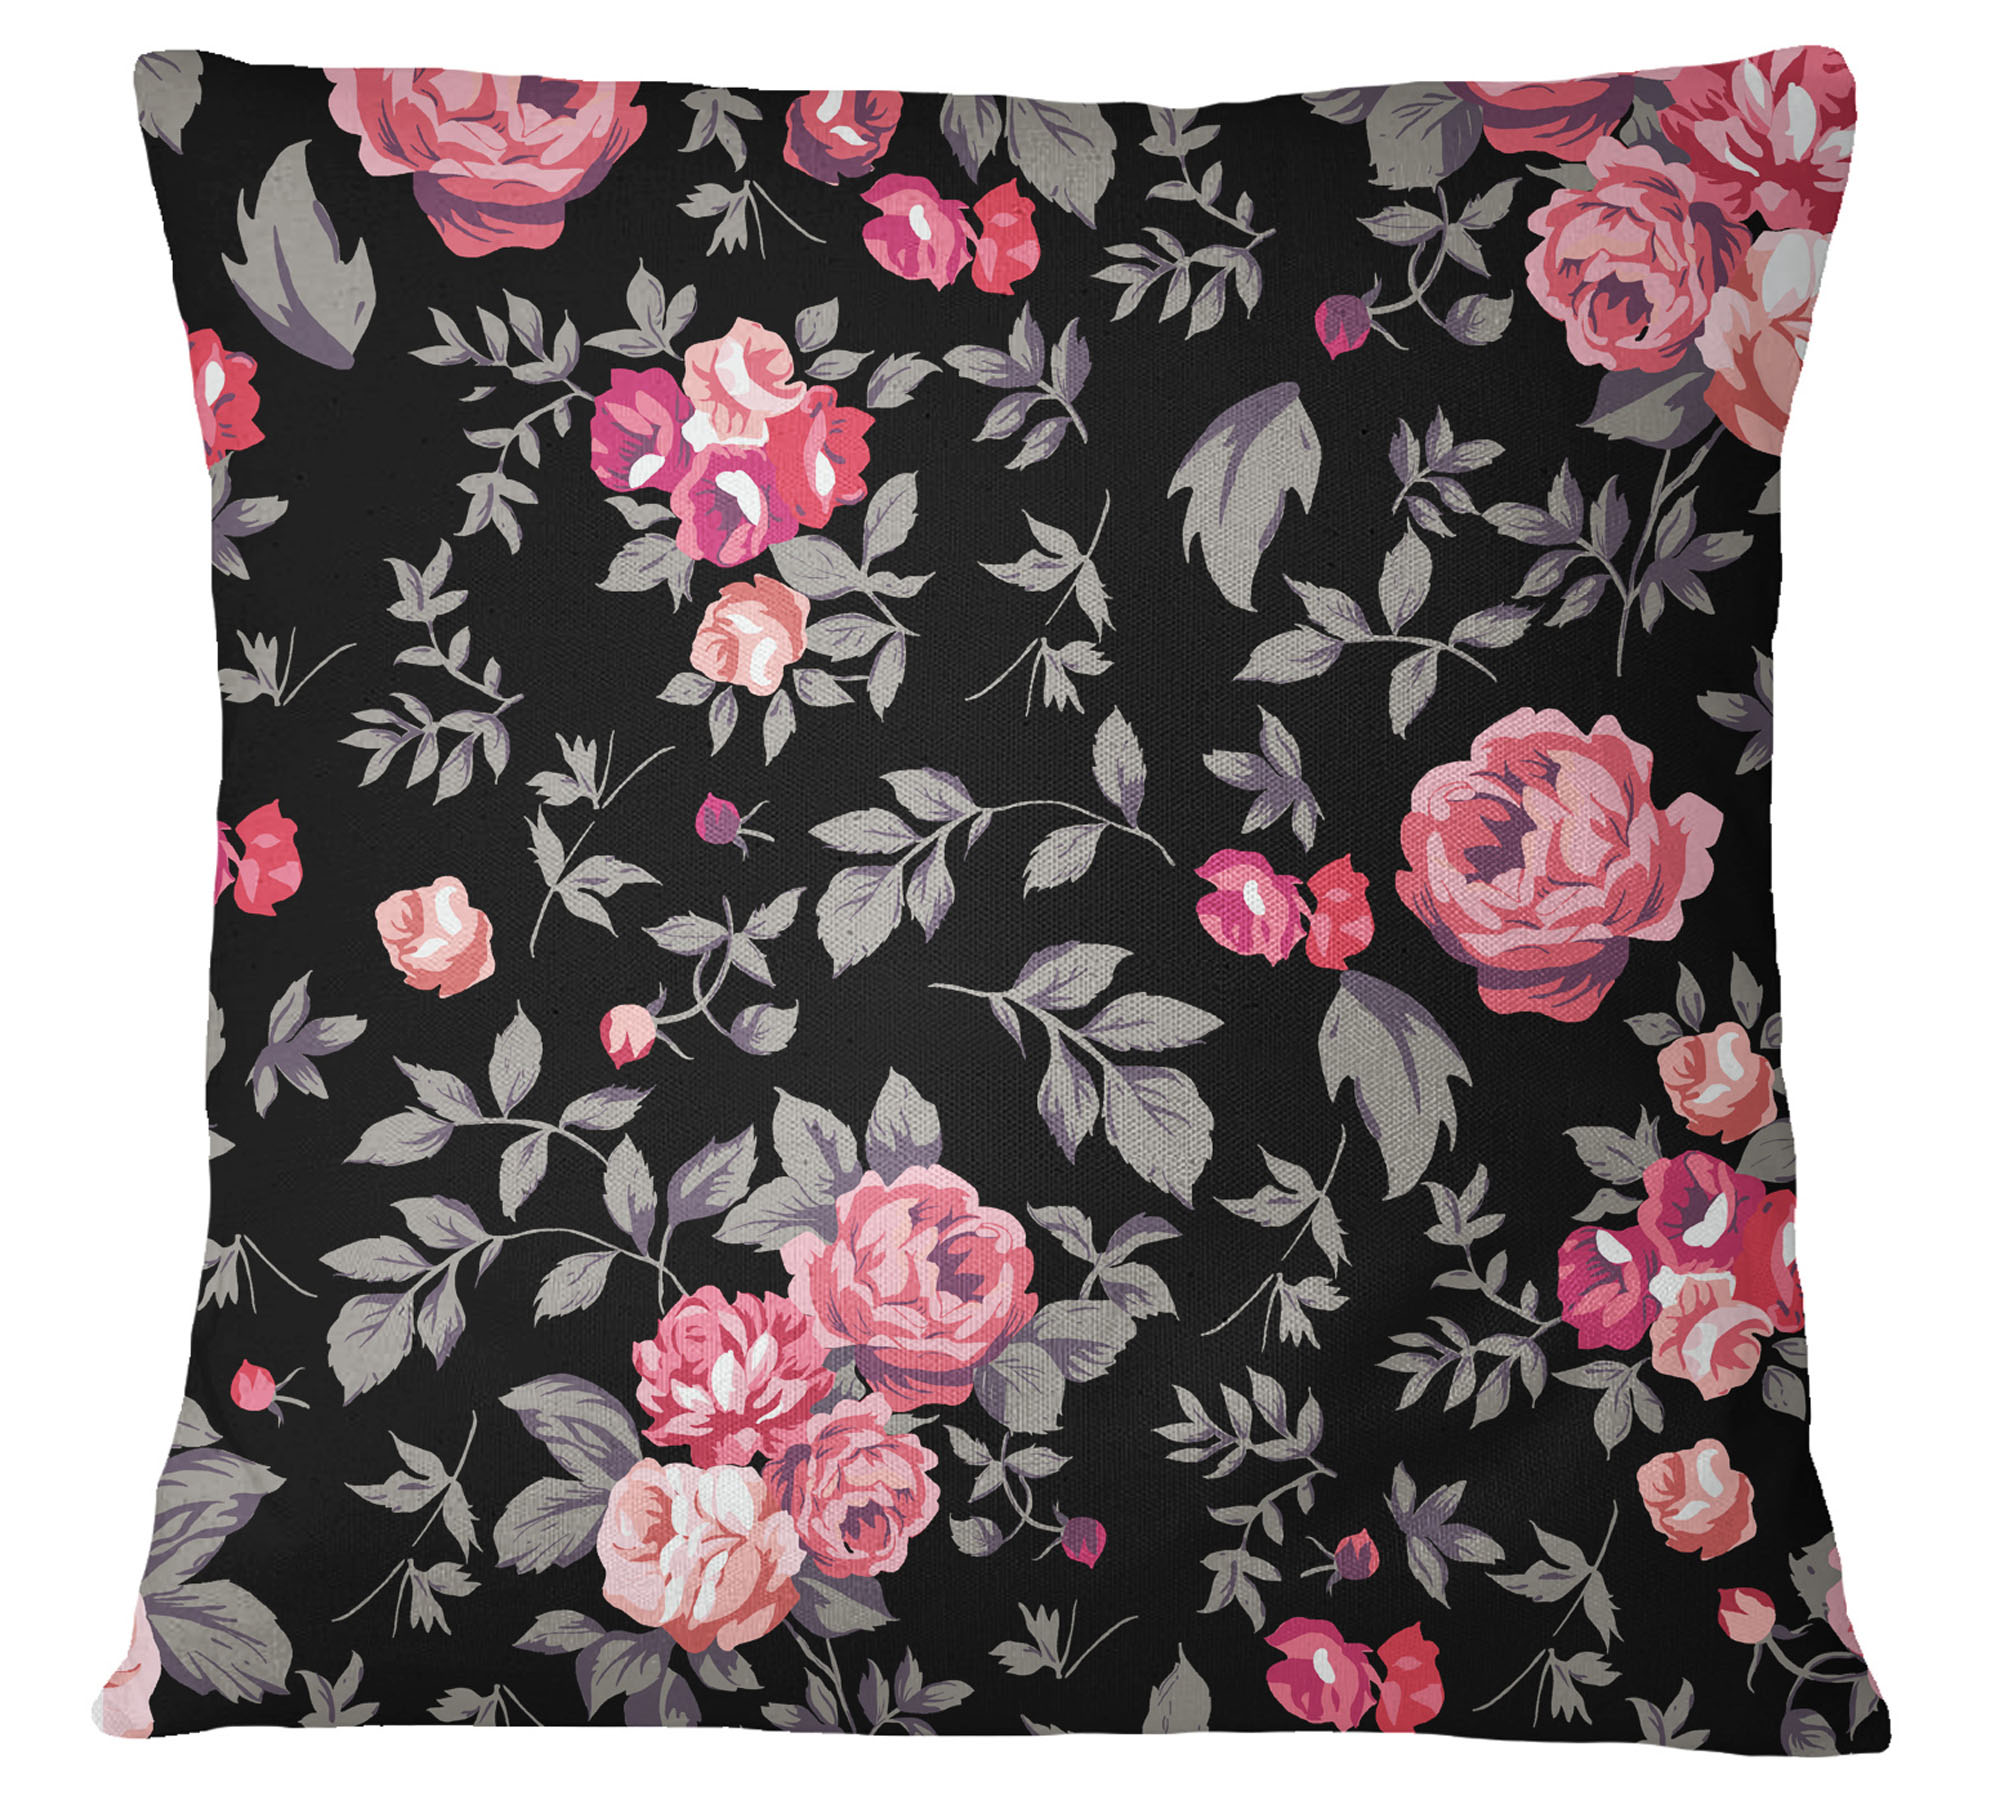 Details about   S4Sassy Floral Print 2 Pcs Cotton Poplin Decorative Pillow Sham Cushion Cover 